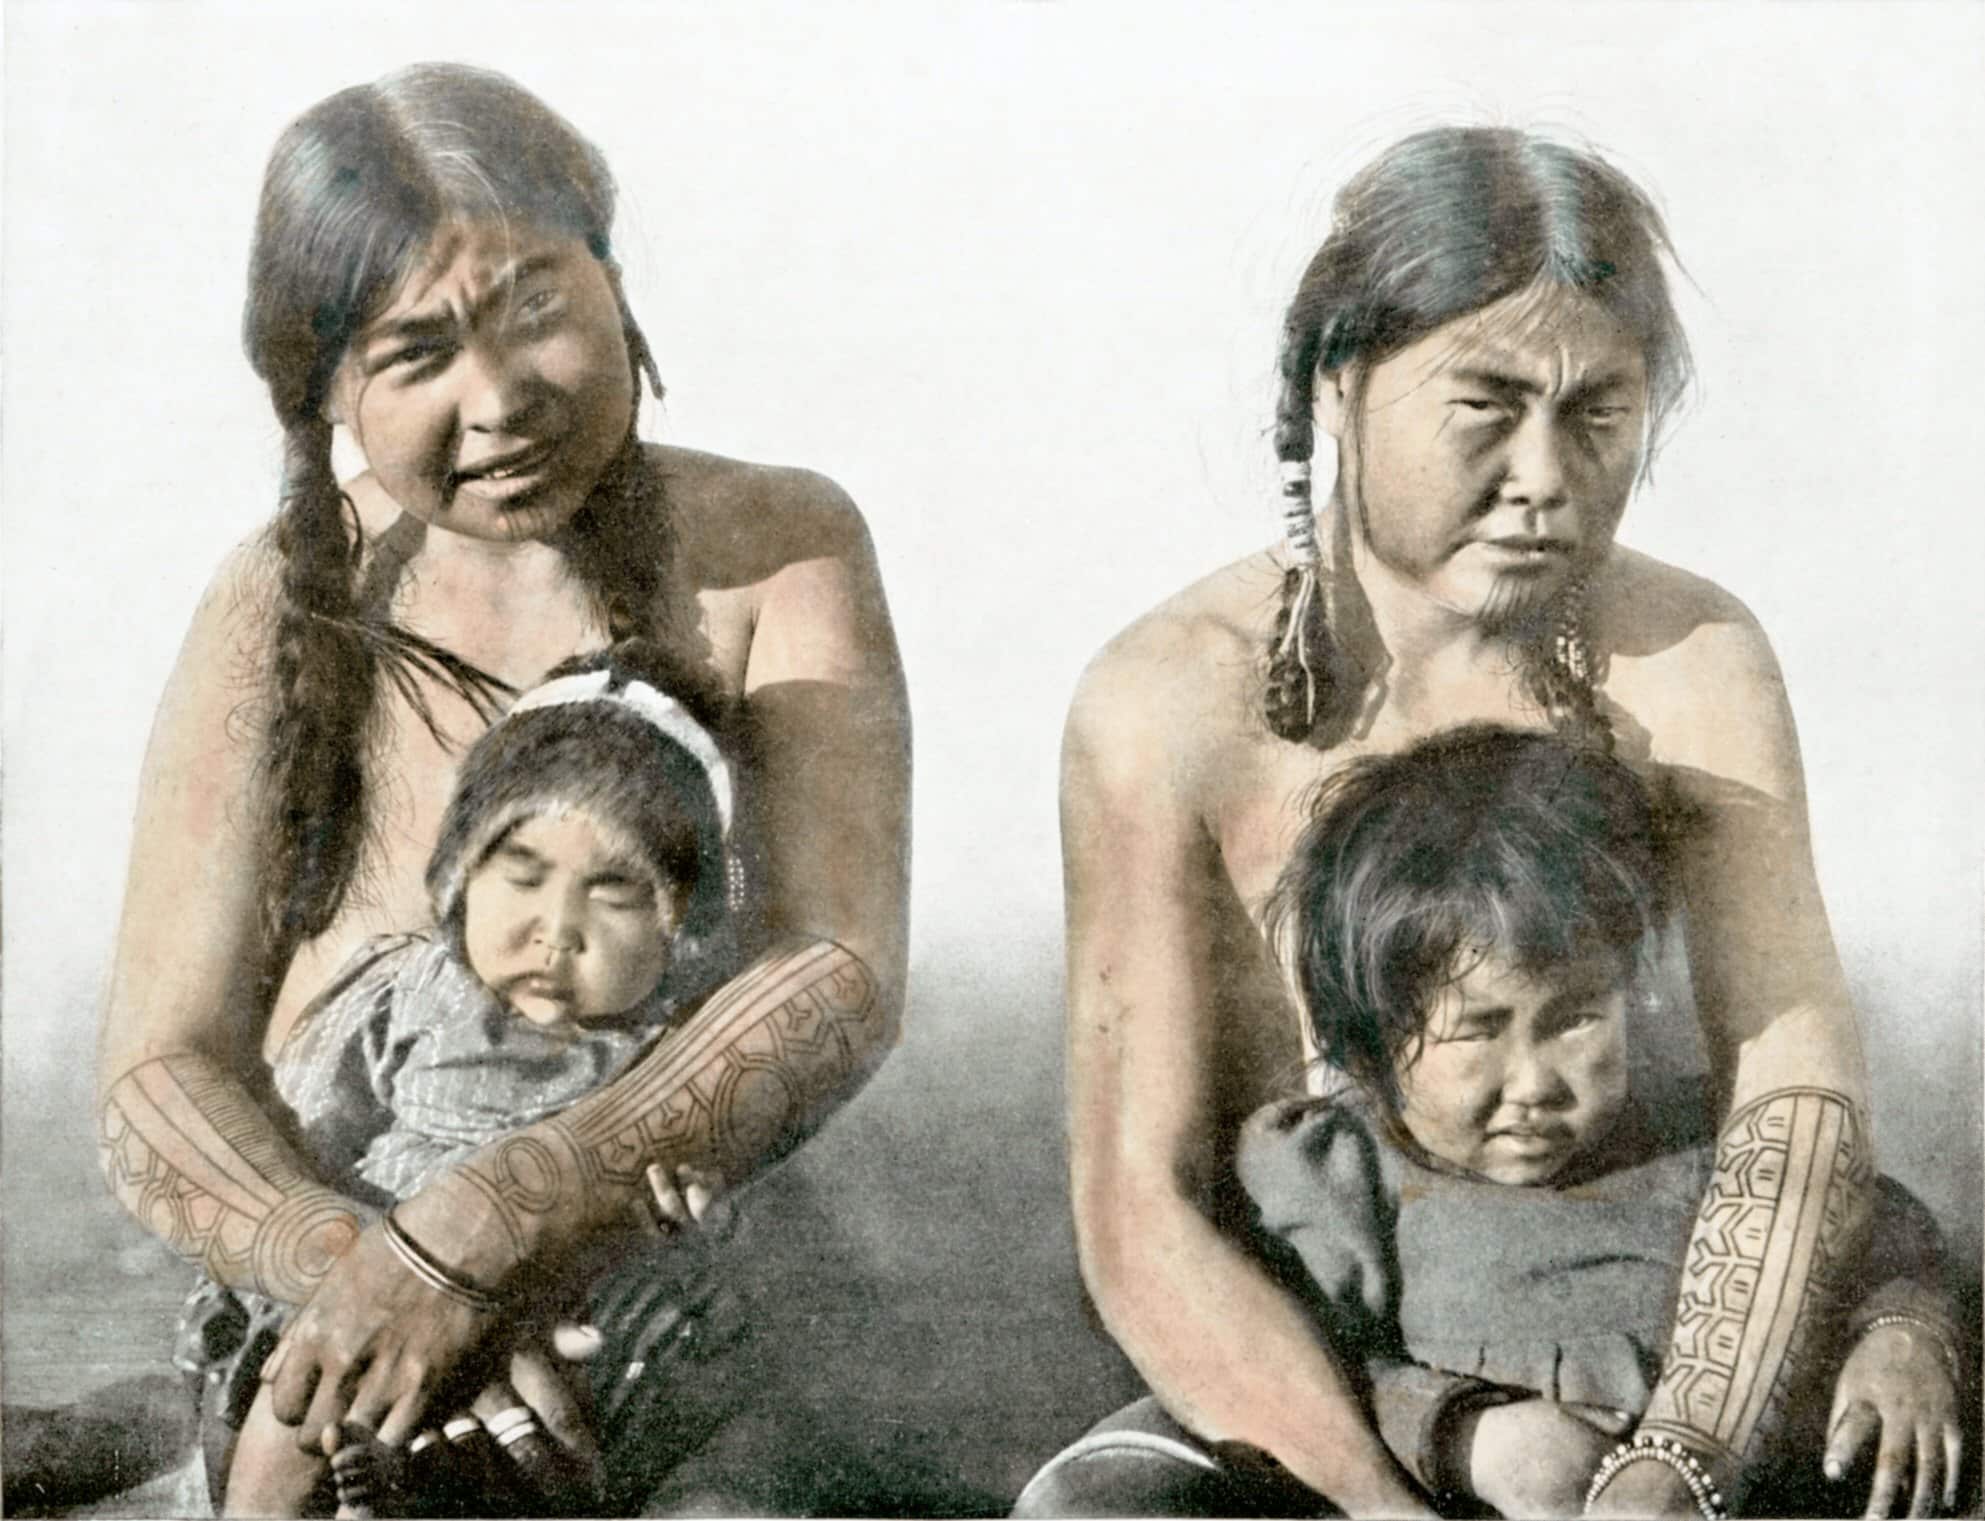 Eskimofrauen mit ihren Jüngsten von King's Island, Alaska. Die Arme zeigen schöne Tätowierungen.